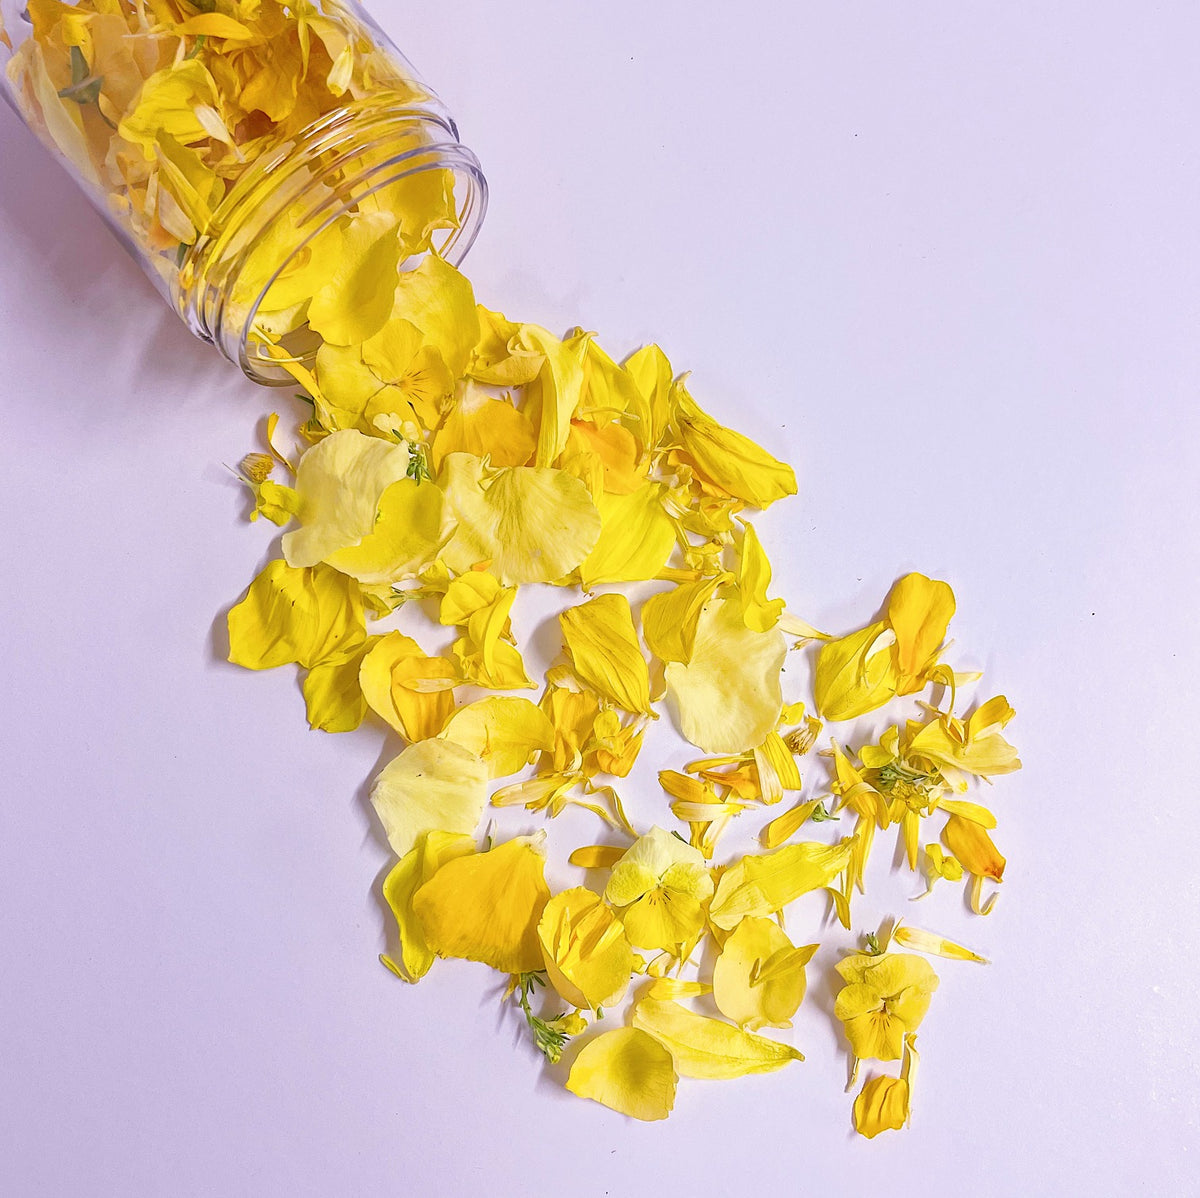 YELLOW SUNSHINE FLOWERFETTI® - Freeze Dried Edible Flower Confetti